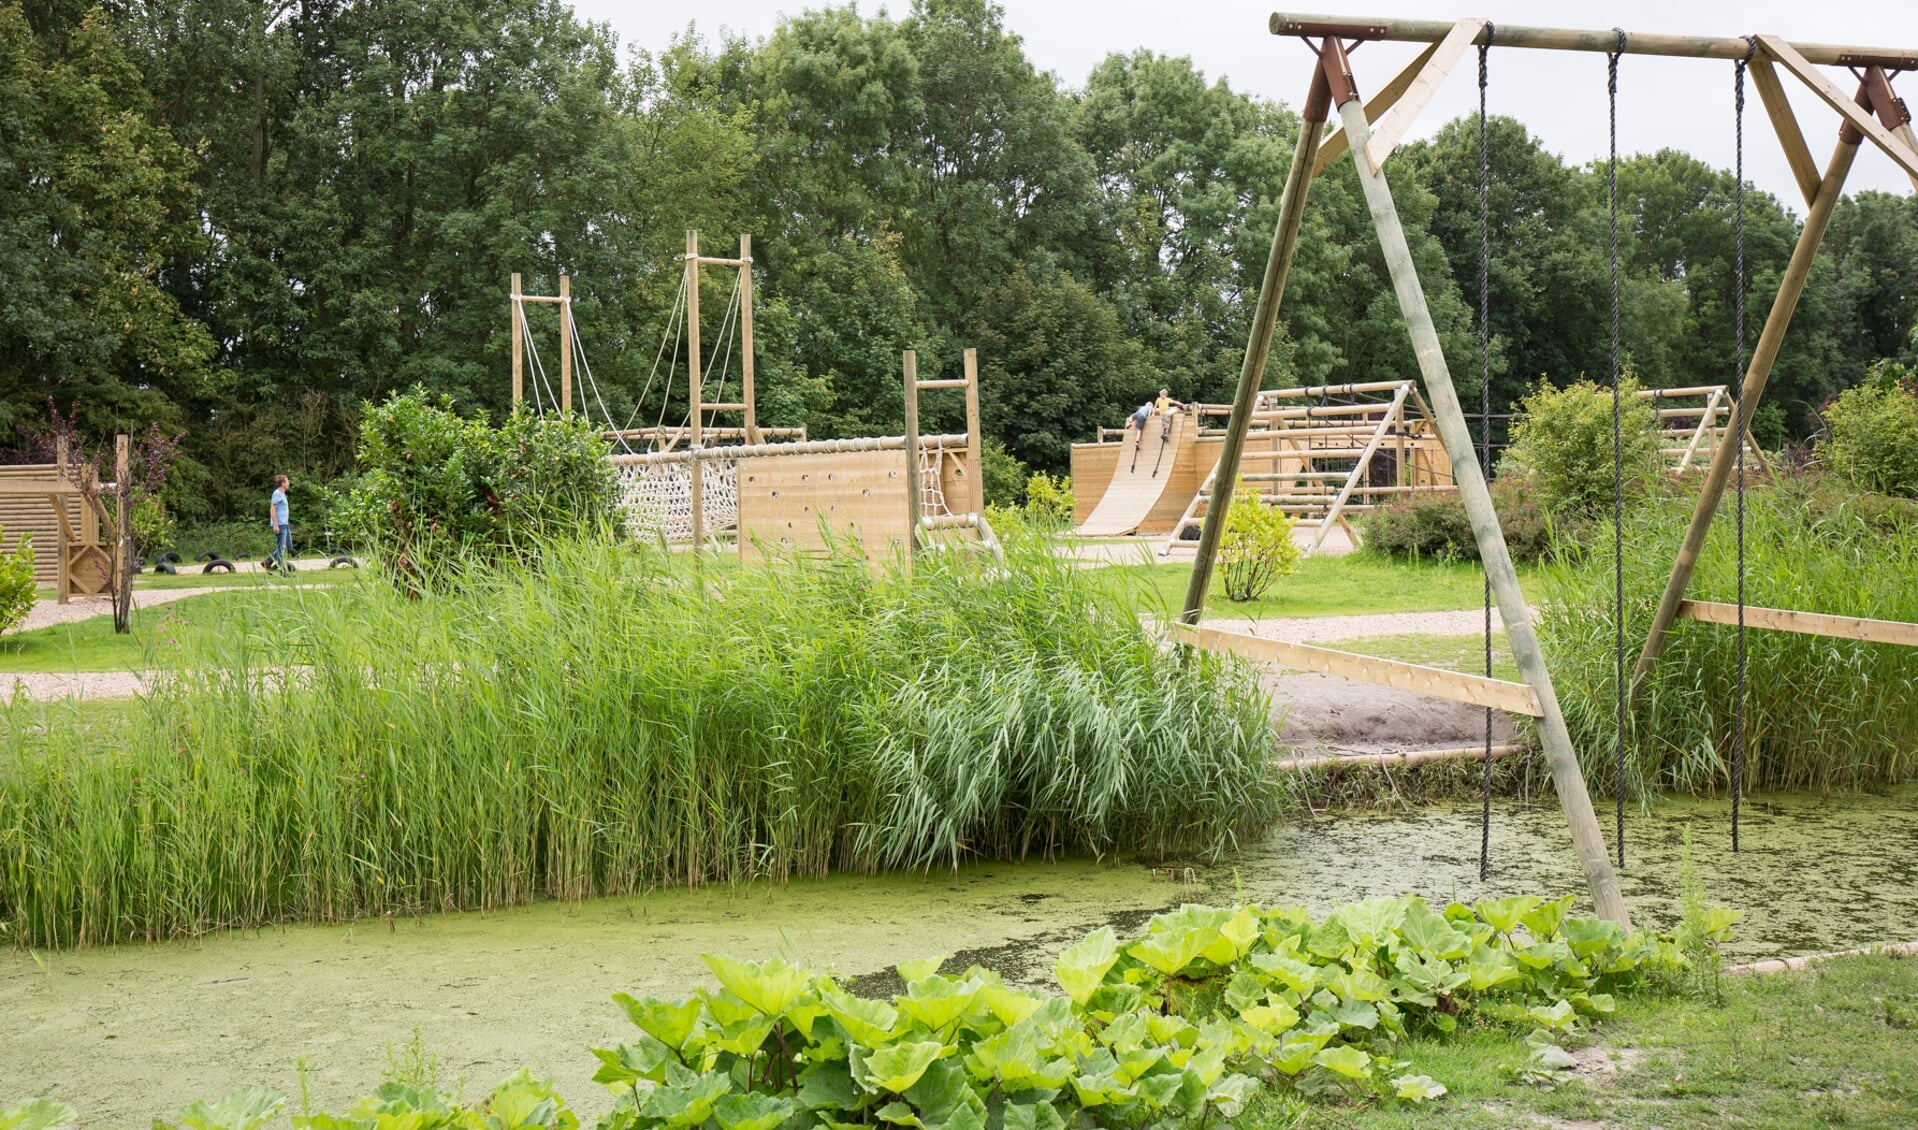 VakantiePRET voor kinderen en jongeren met een beperking in Outdoorpark Alkmaar.